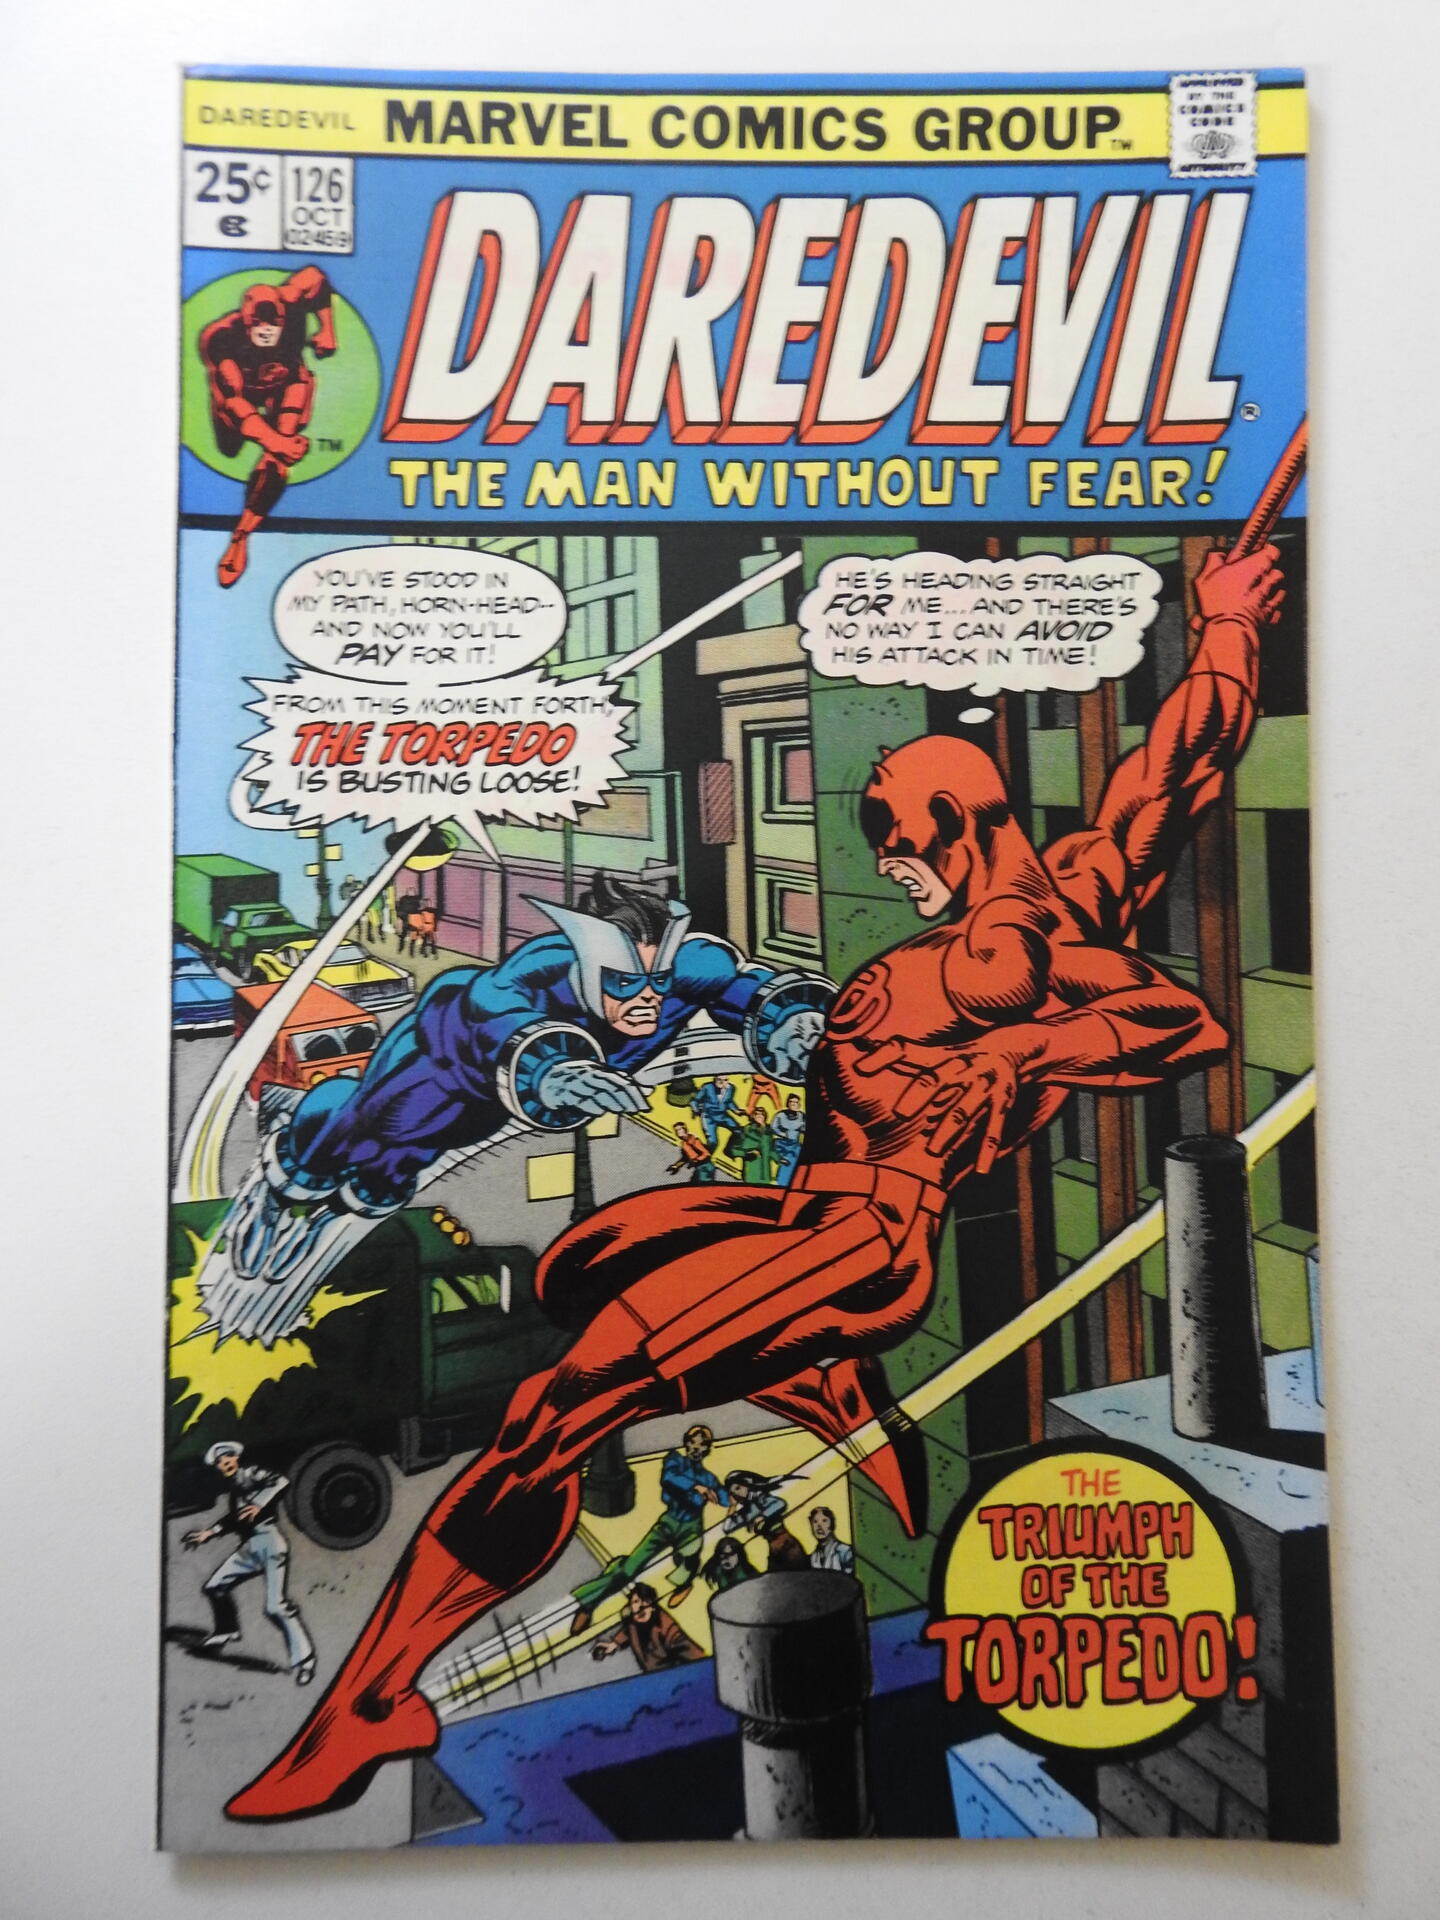 Daredevil #126 (1975) VF+ Condition! | Comic Books - Bronze Age, Marvel ...